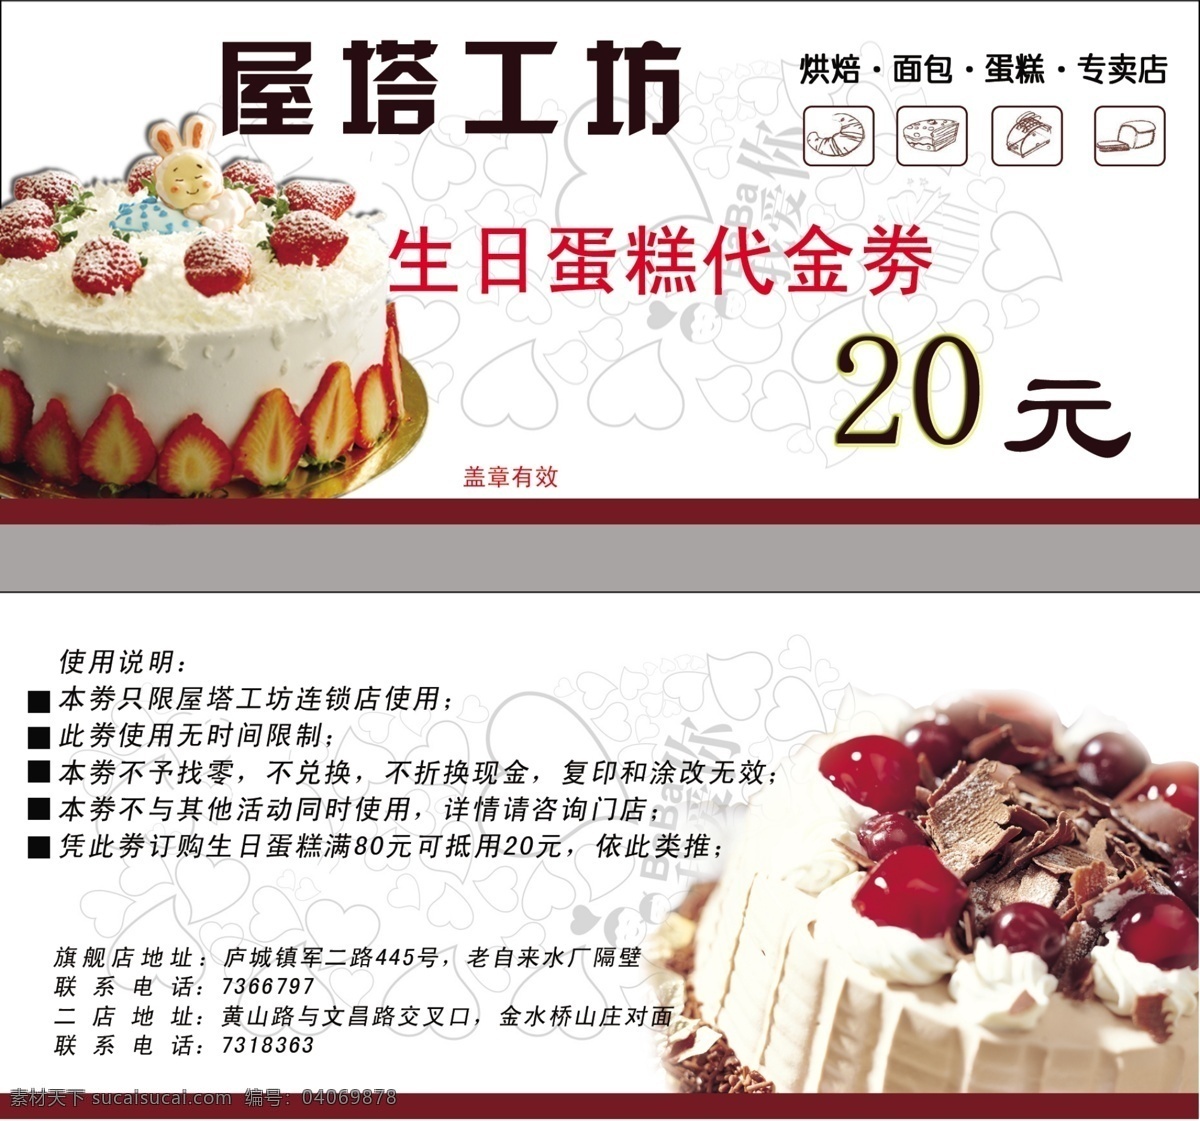 生日蛋糕 代金券 代金券下载 20元 生日蛋糕甜品 蛋糕坊 甜品店